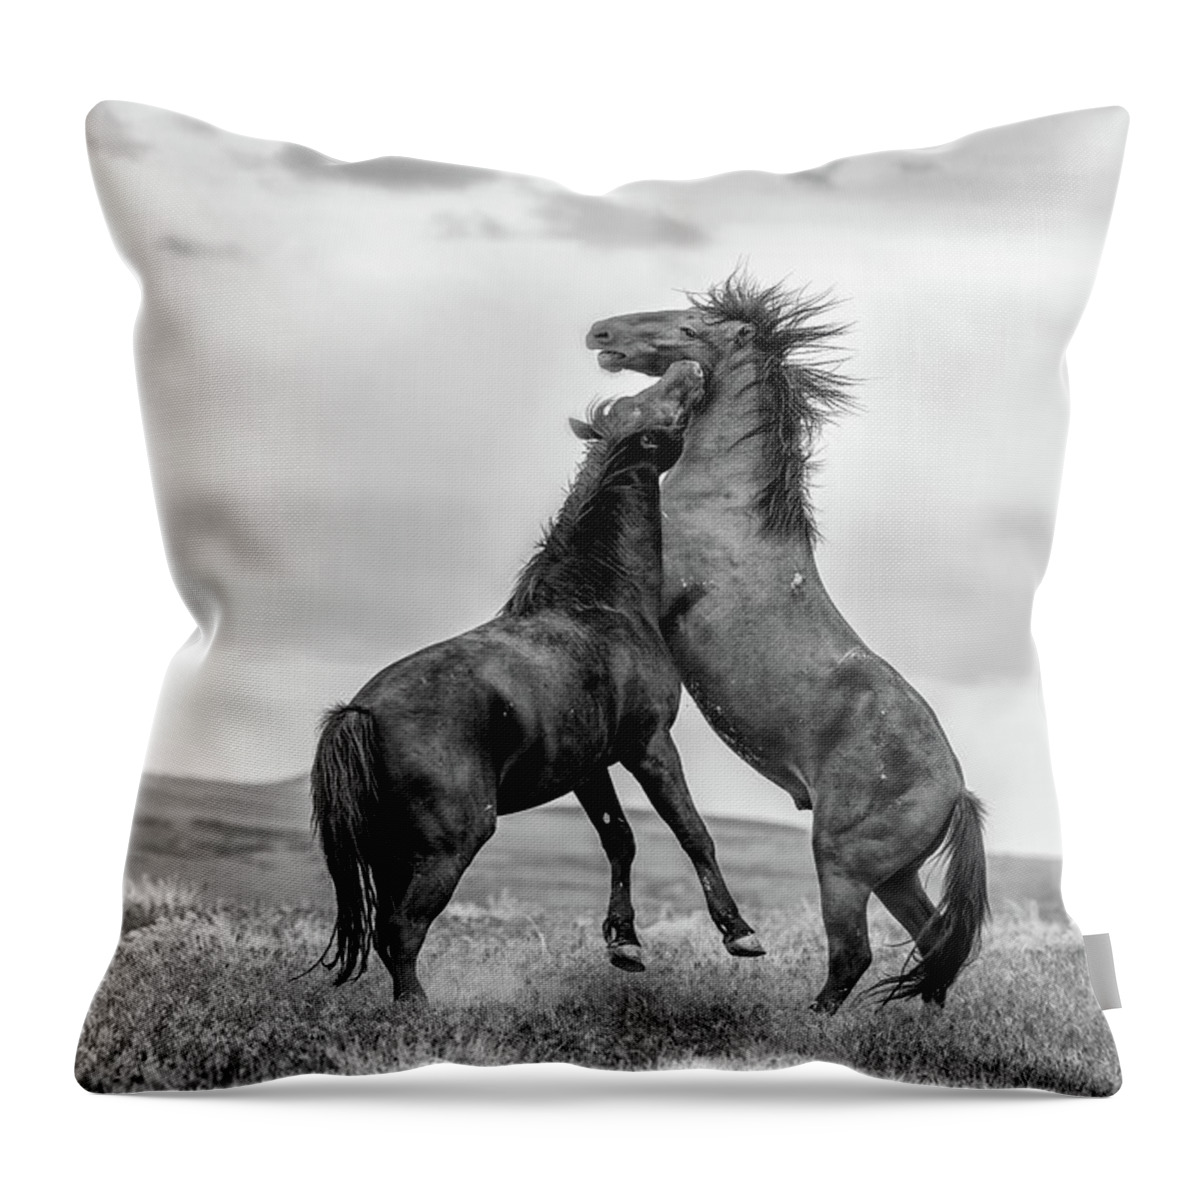 Horse Throw Pillow featuring the photograph Desert Dance by Fon Denton